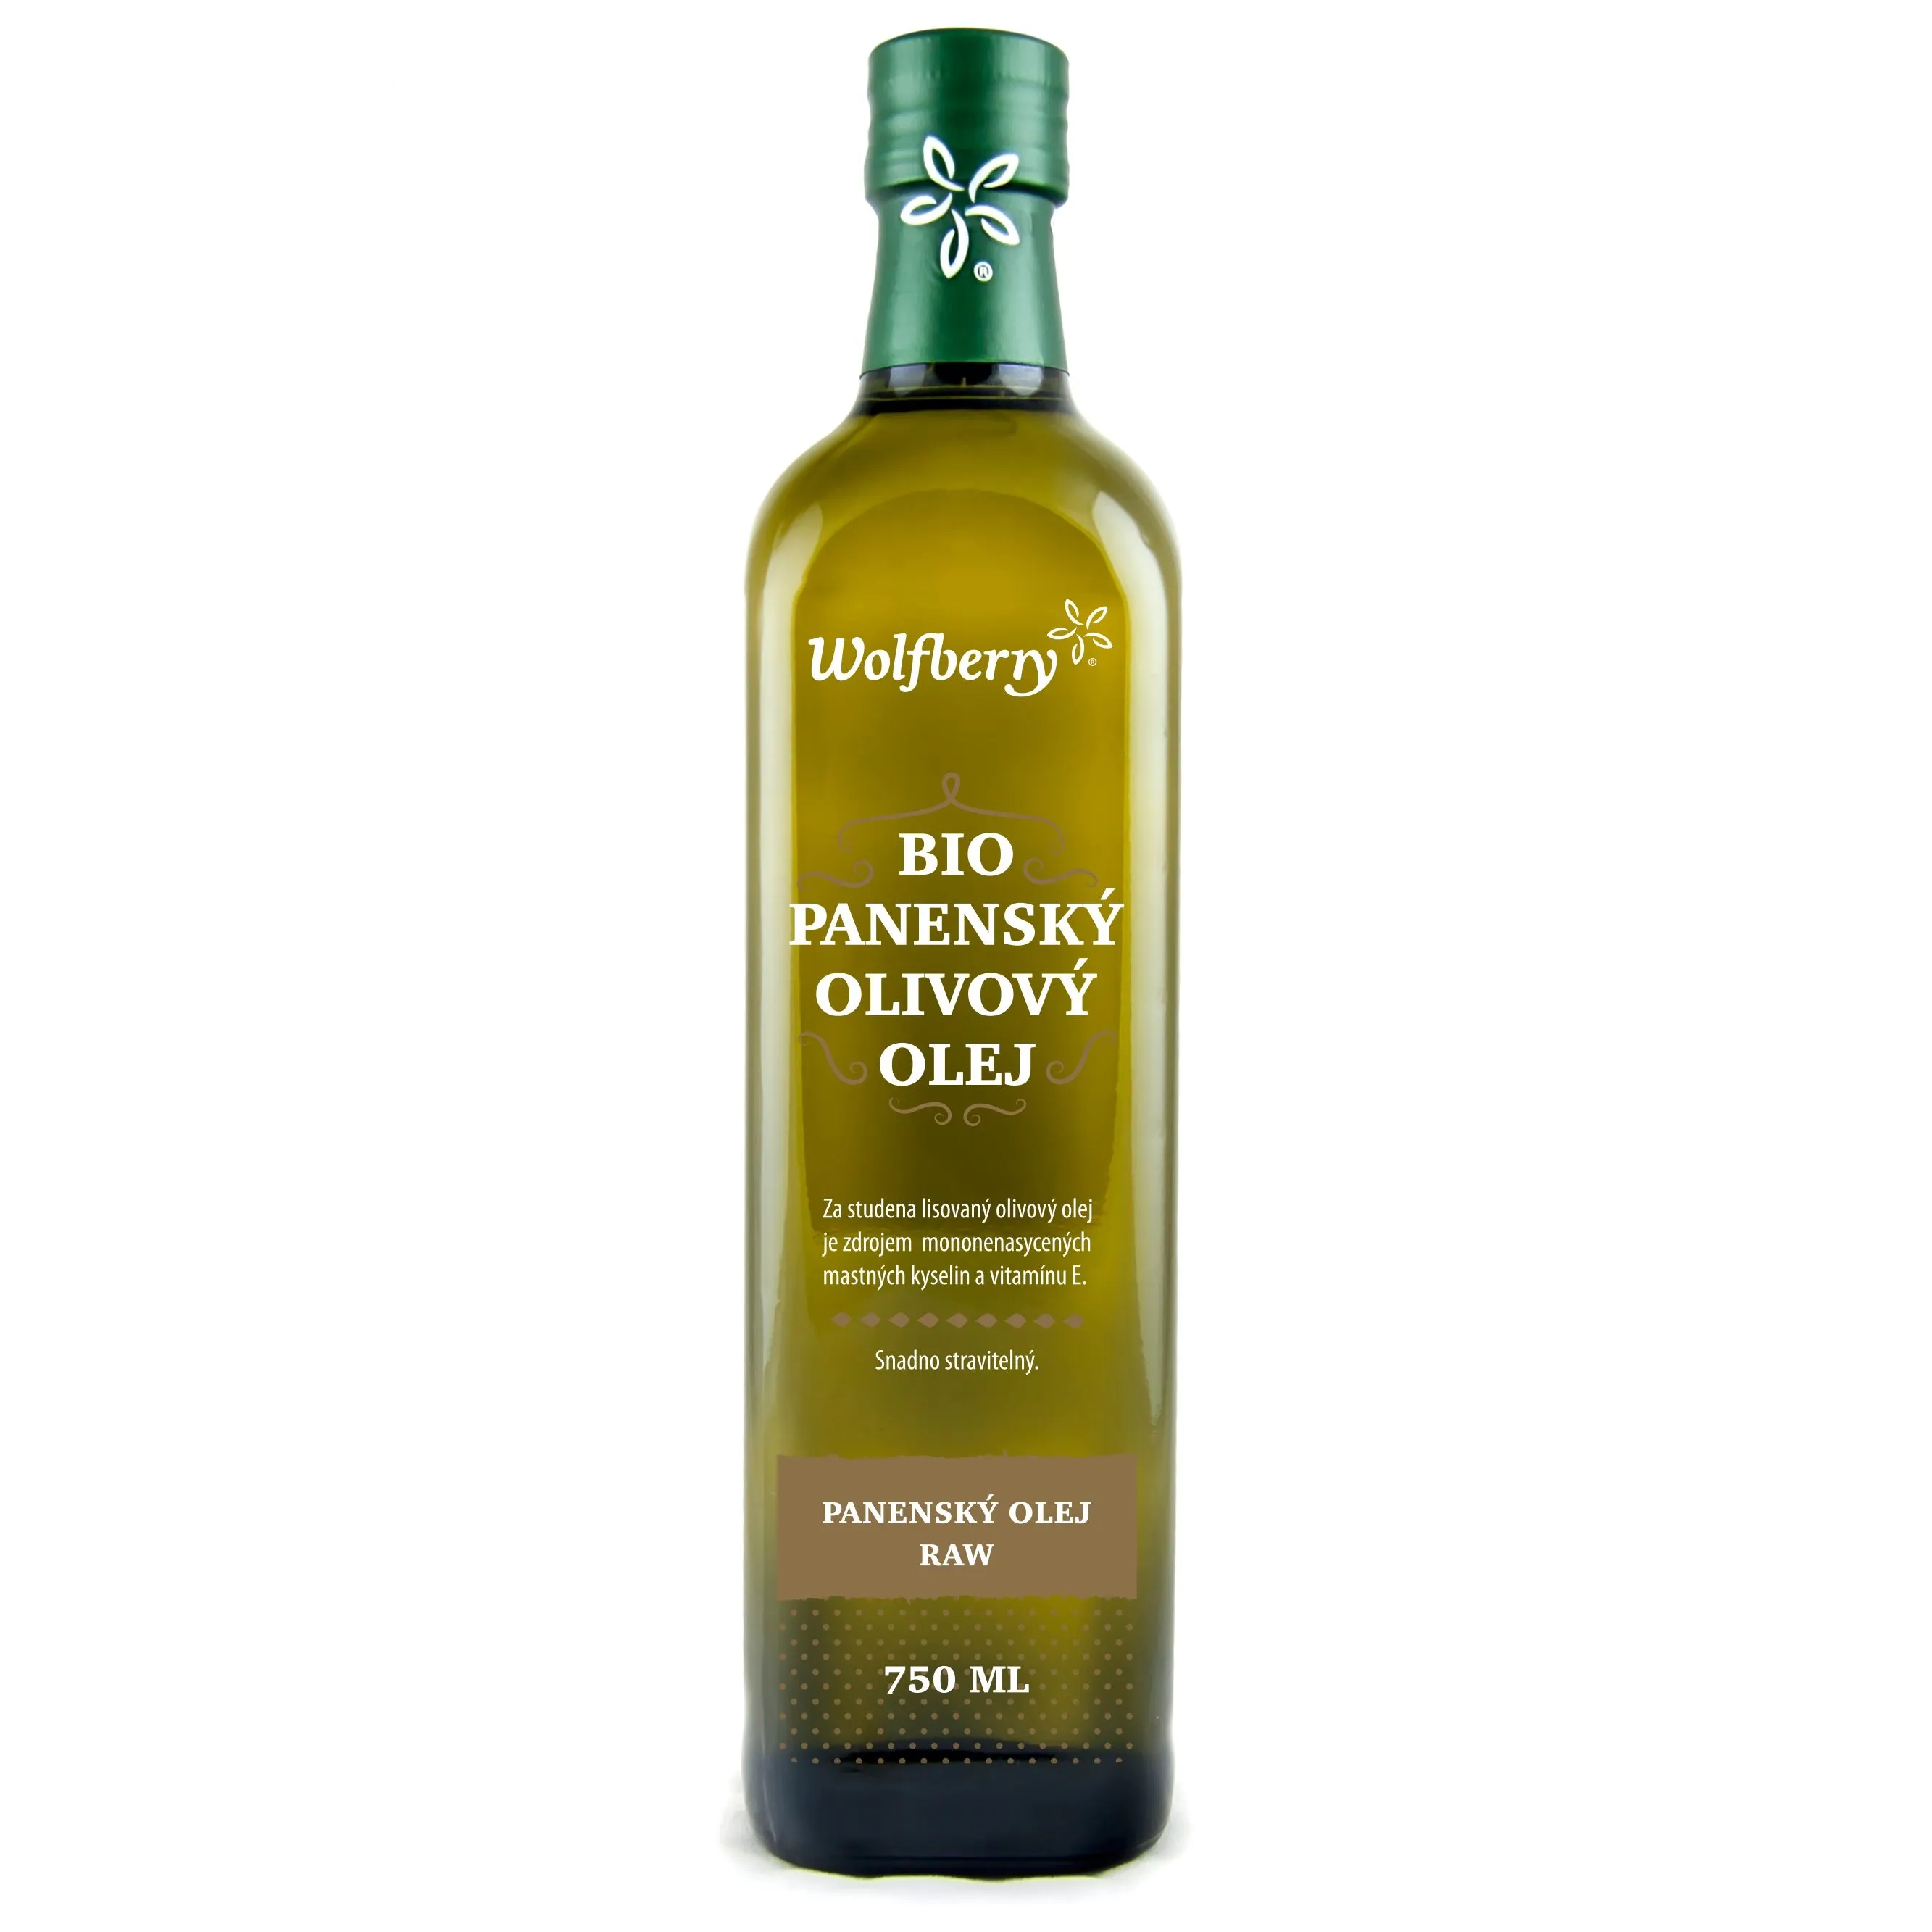 Wolfberry Olivový olej panenský BIO 750 ml